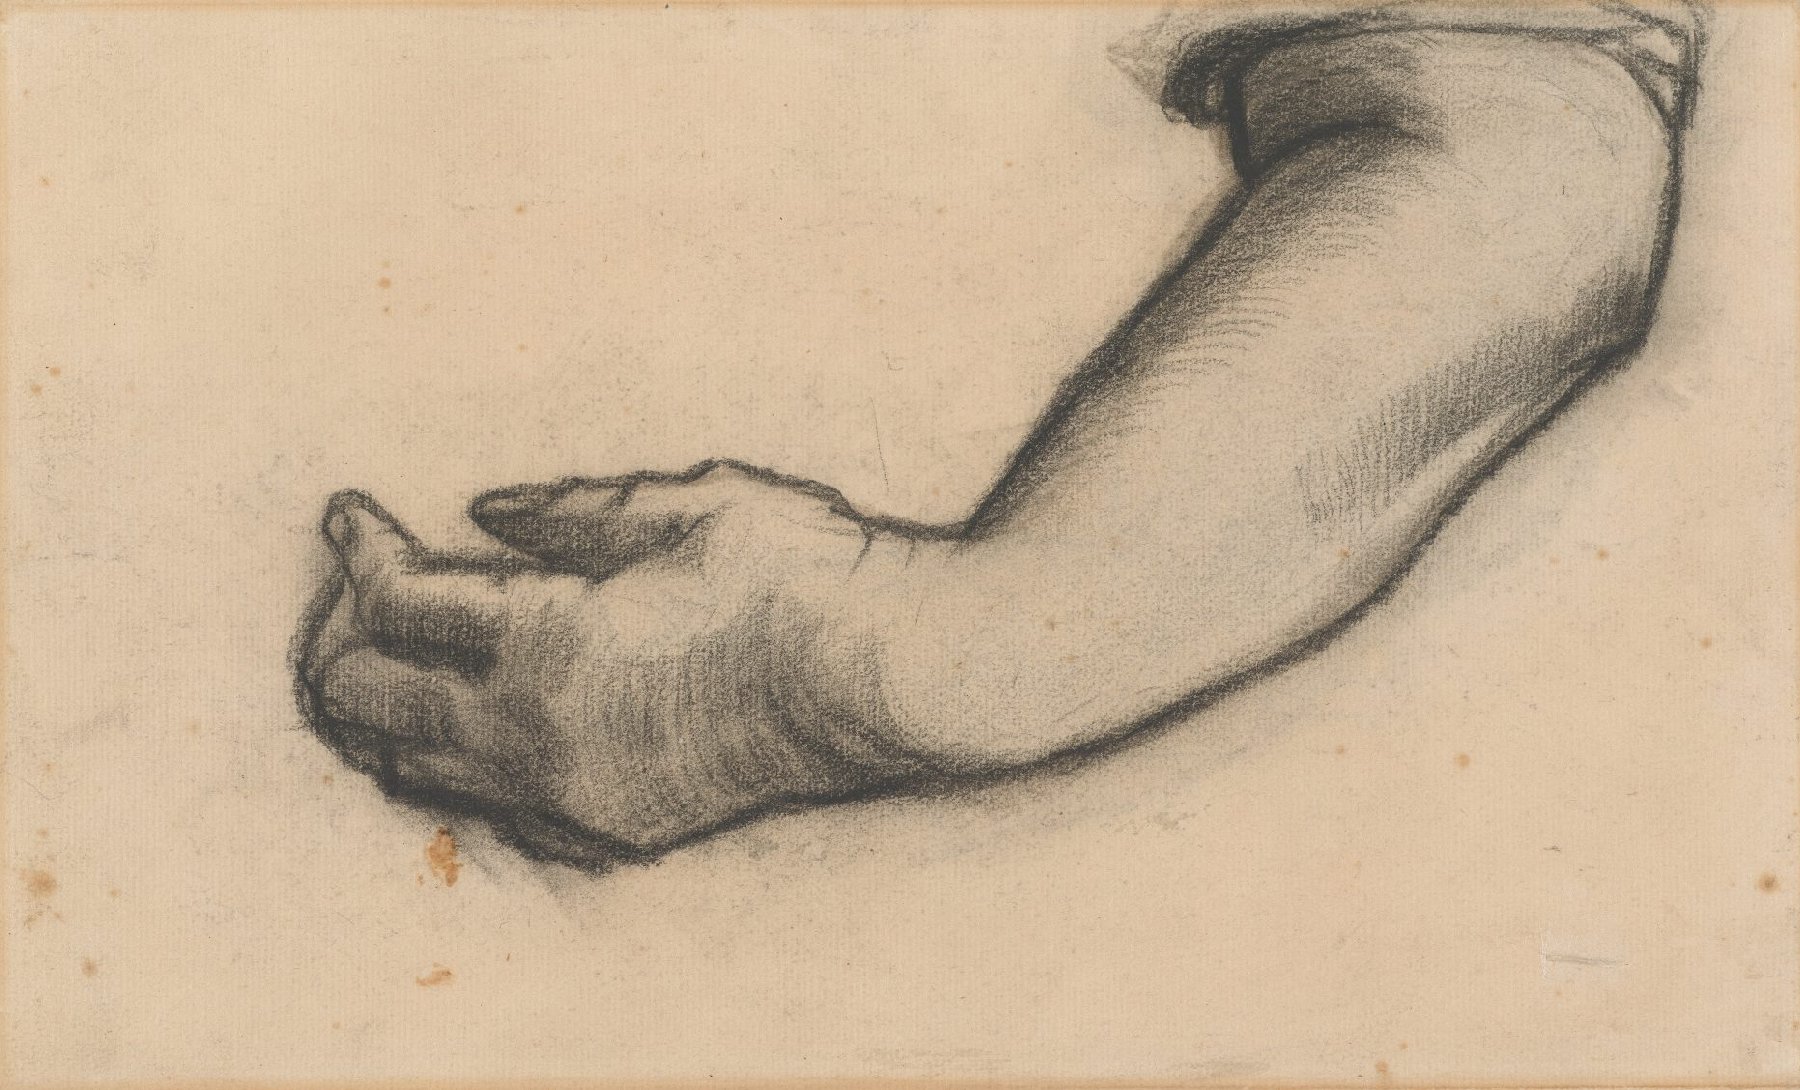 Arm Vincent van Gogh (1853 - 1890), Nuenen, december 1884-mei 1885